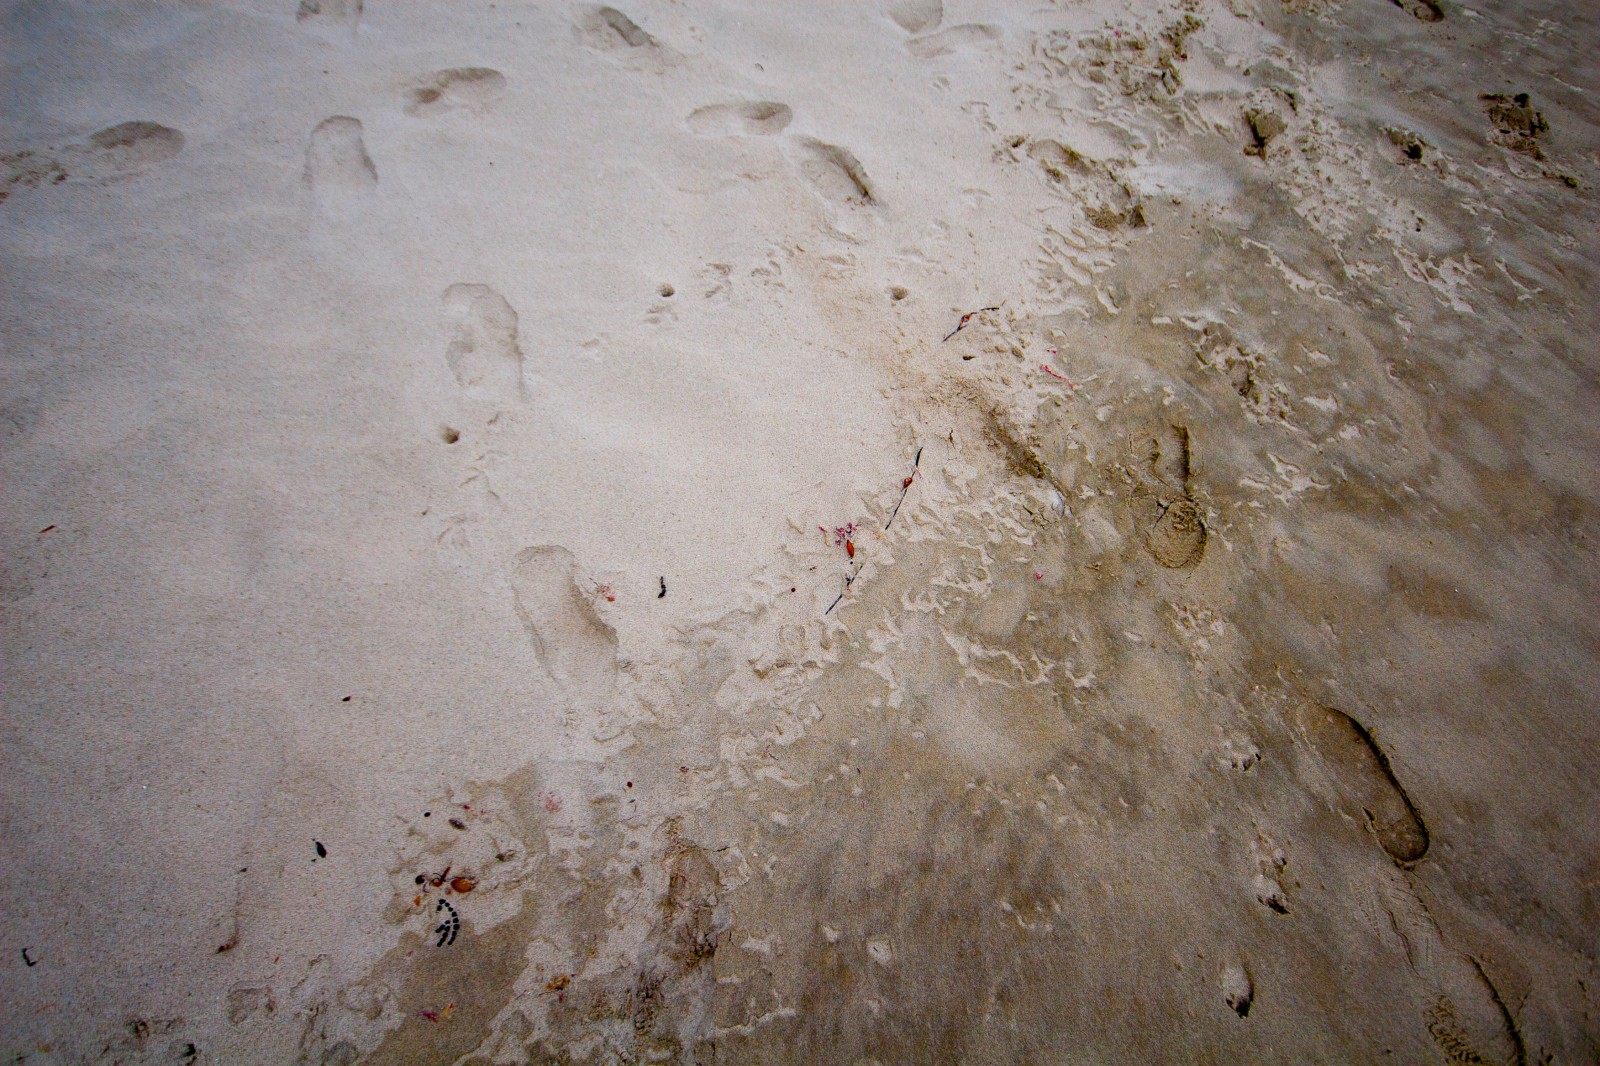 wet sand